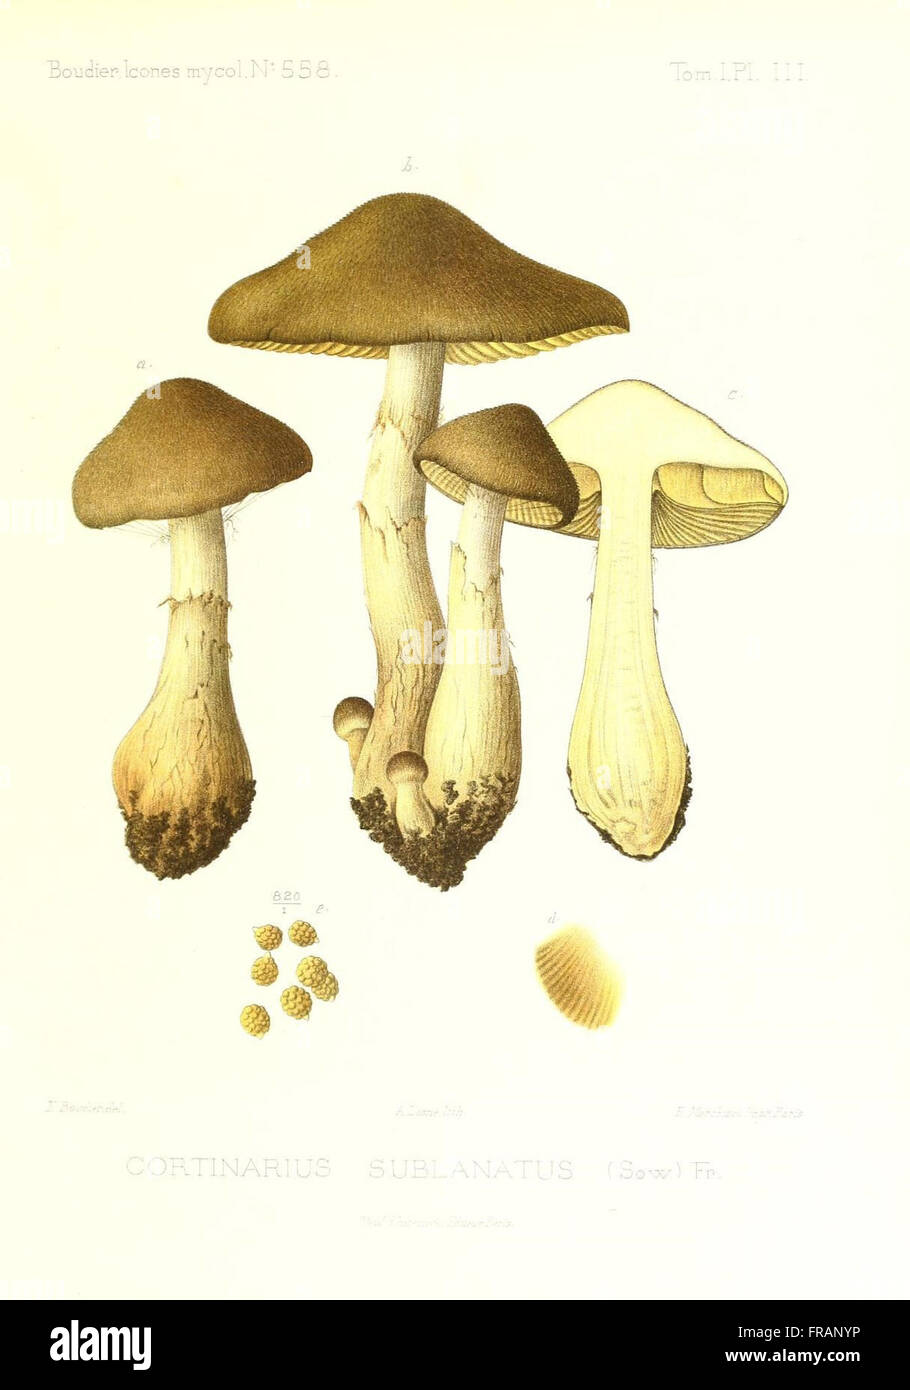 Icones mycologicC3A6, ou Iconographie des champignons de France principalement Discomycetes (Pl. 111) Stock Photo